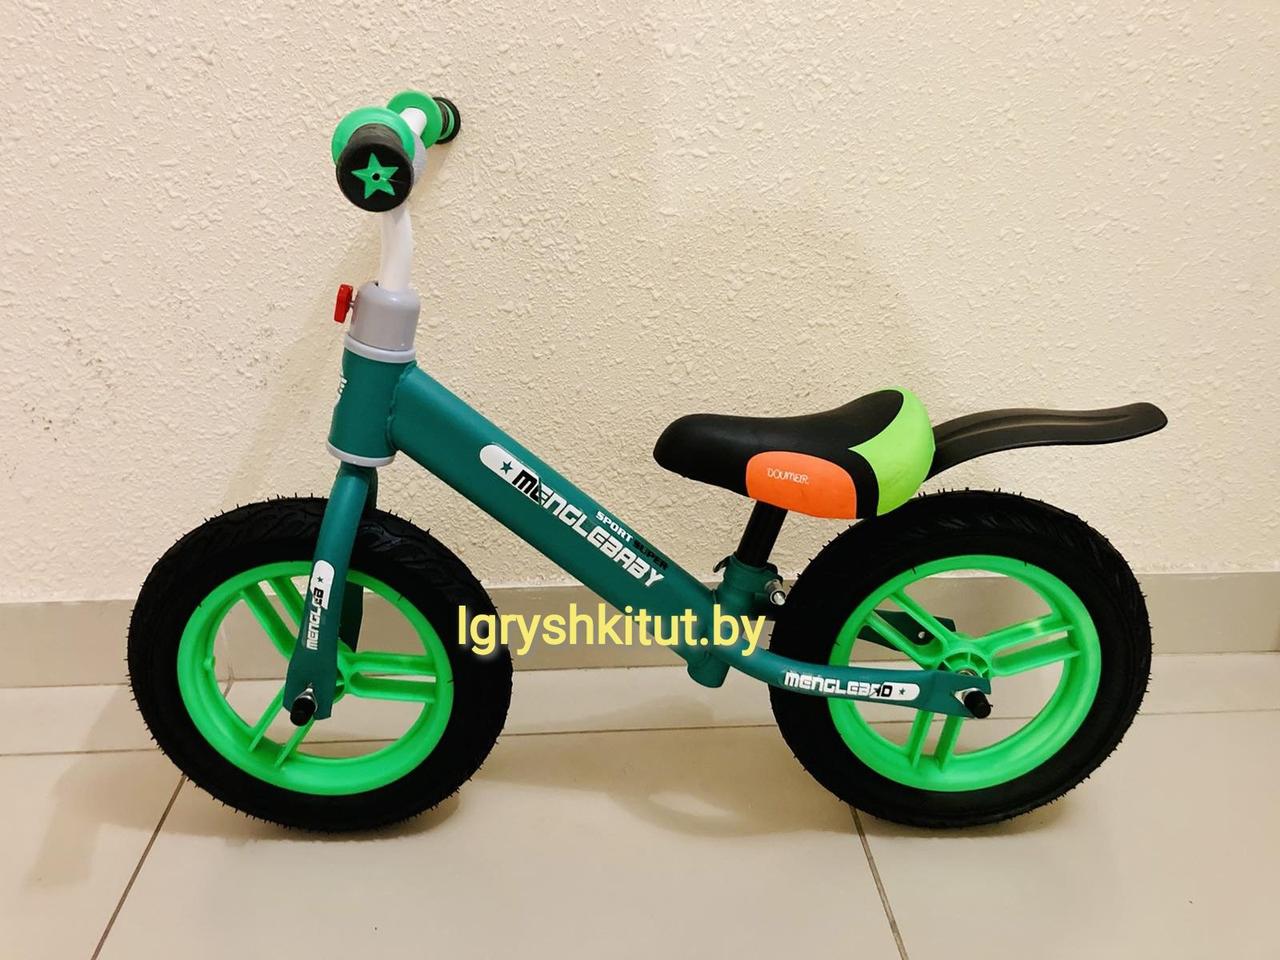 Детский беговел, колёса ПВХ с резиновым покрытием, хорошее качество, зелёный